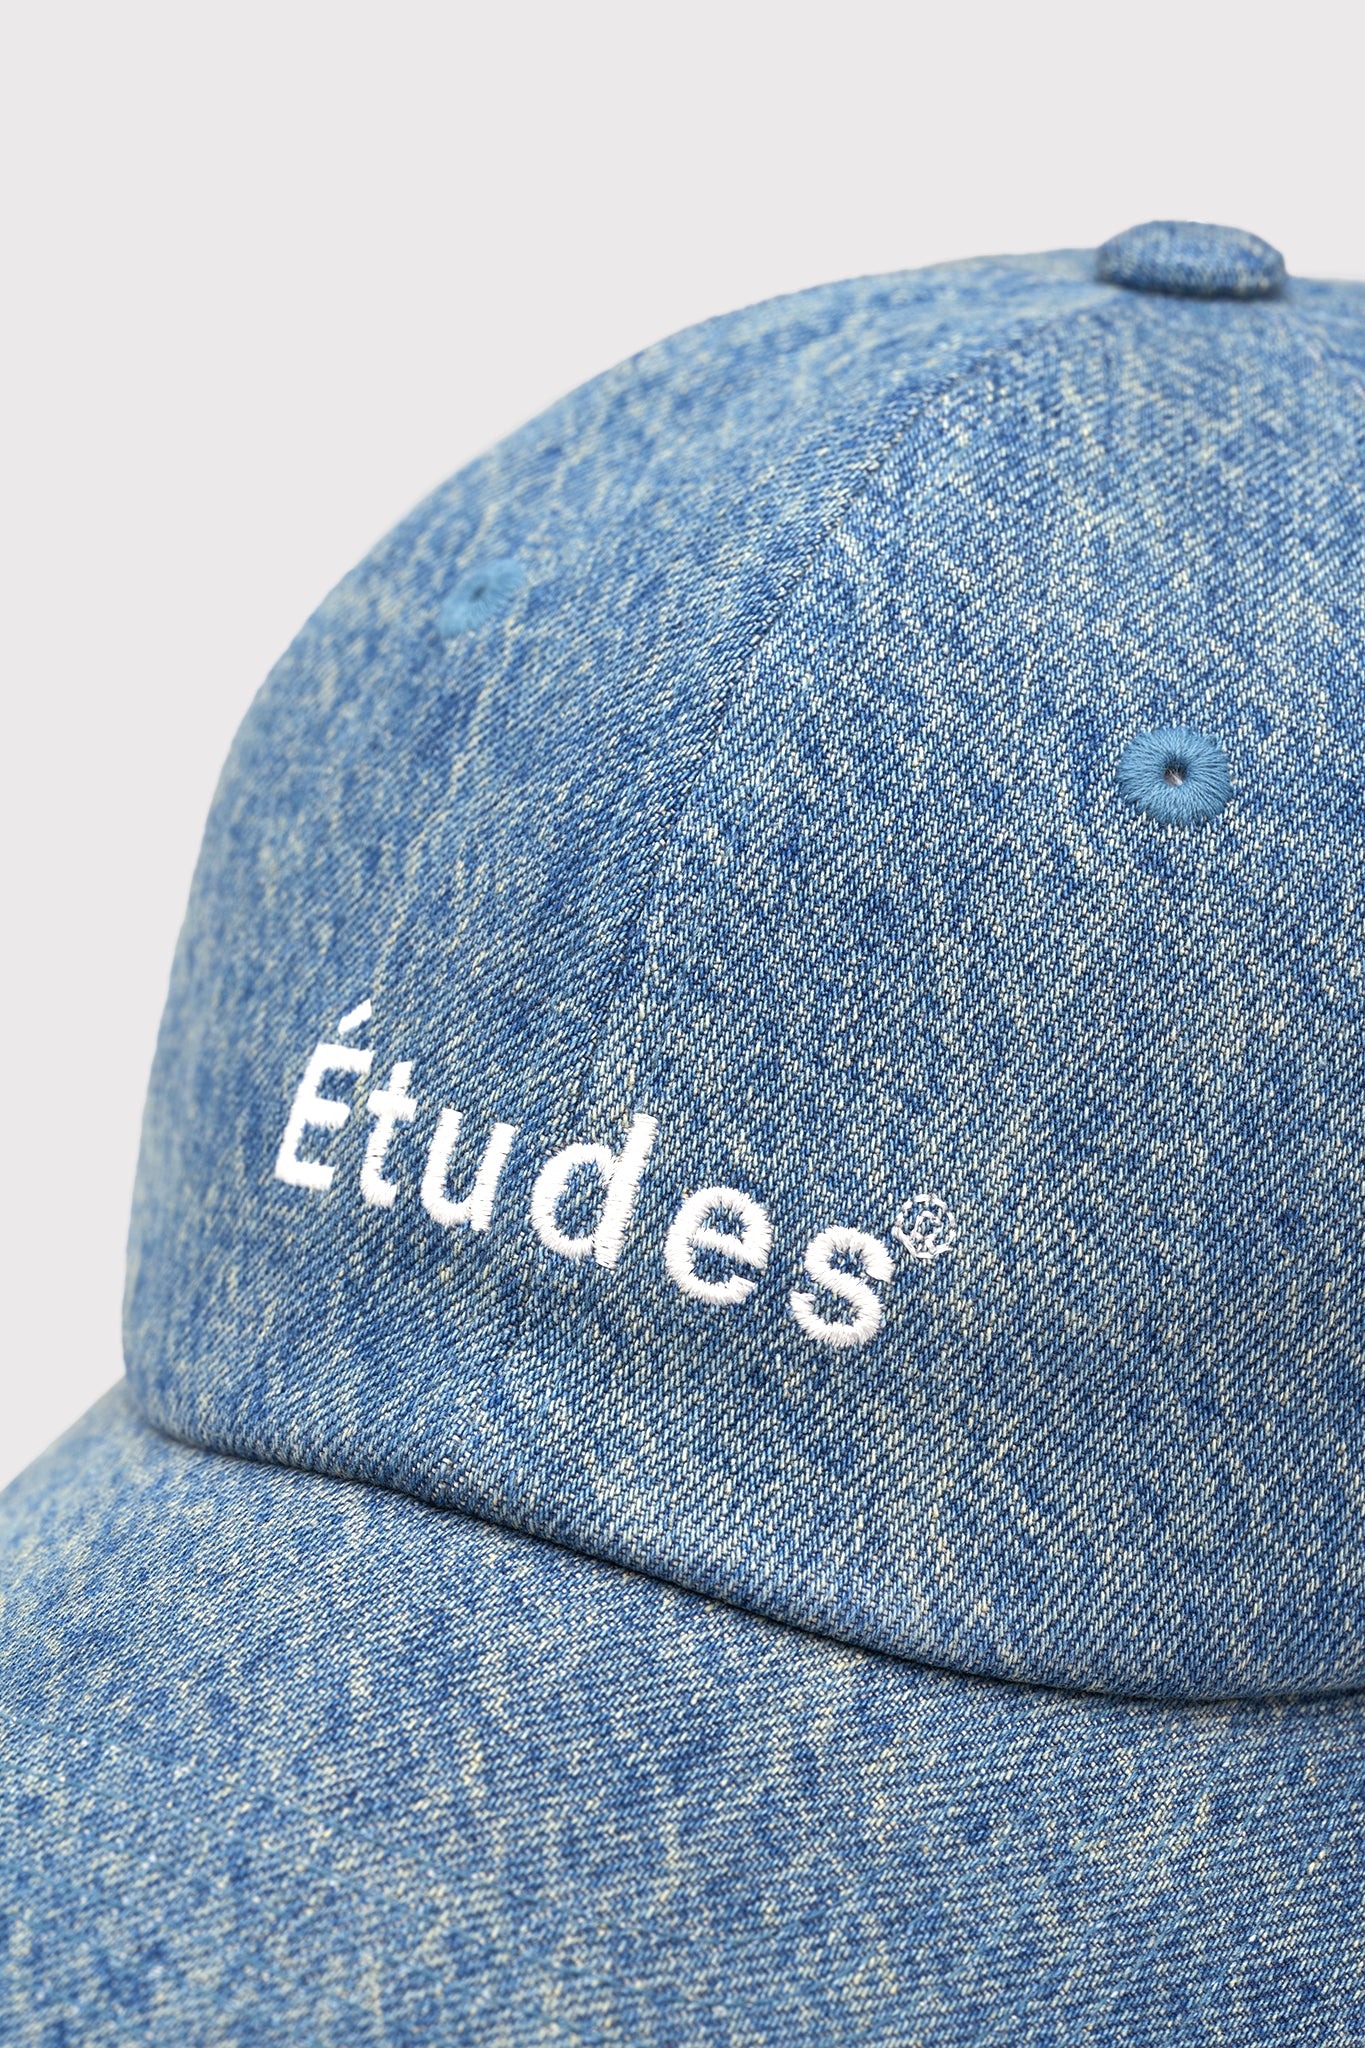 ÉTUDES BOOSTER ETUDES STONE BLUE HATS 4